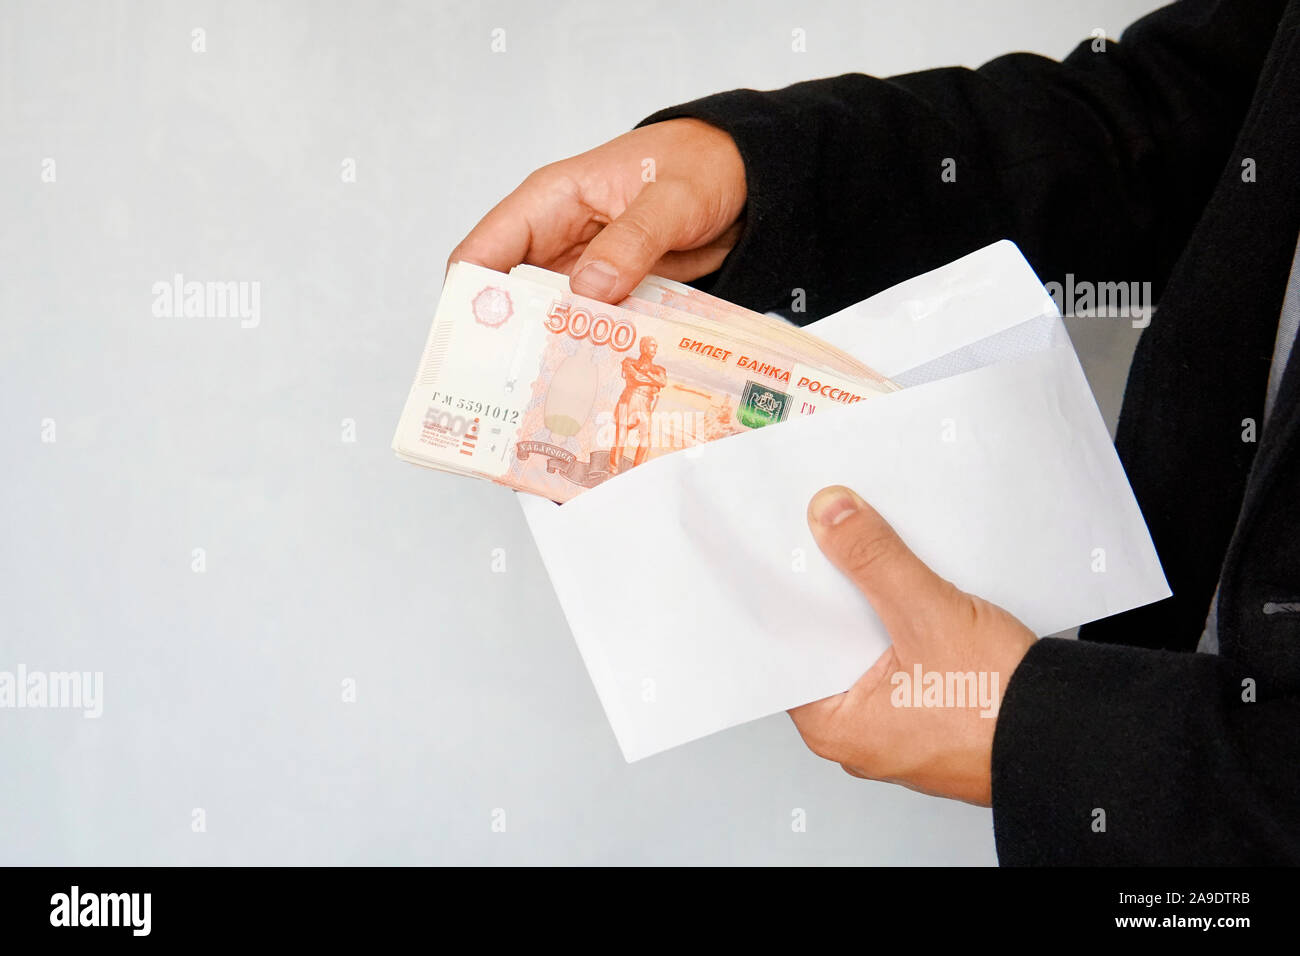 Grosses coupures de 5000 roubles dans une enveloppe blanche. Un homme part détient une enveloppe avec de l'argent. La notion de corruption et de main d'hommes rec. Banque D'Images